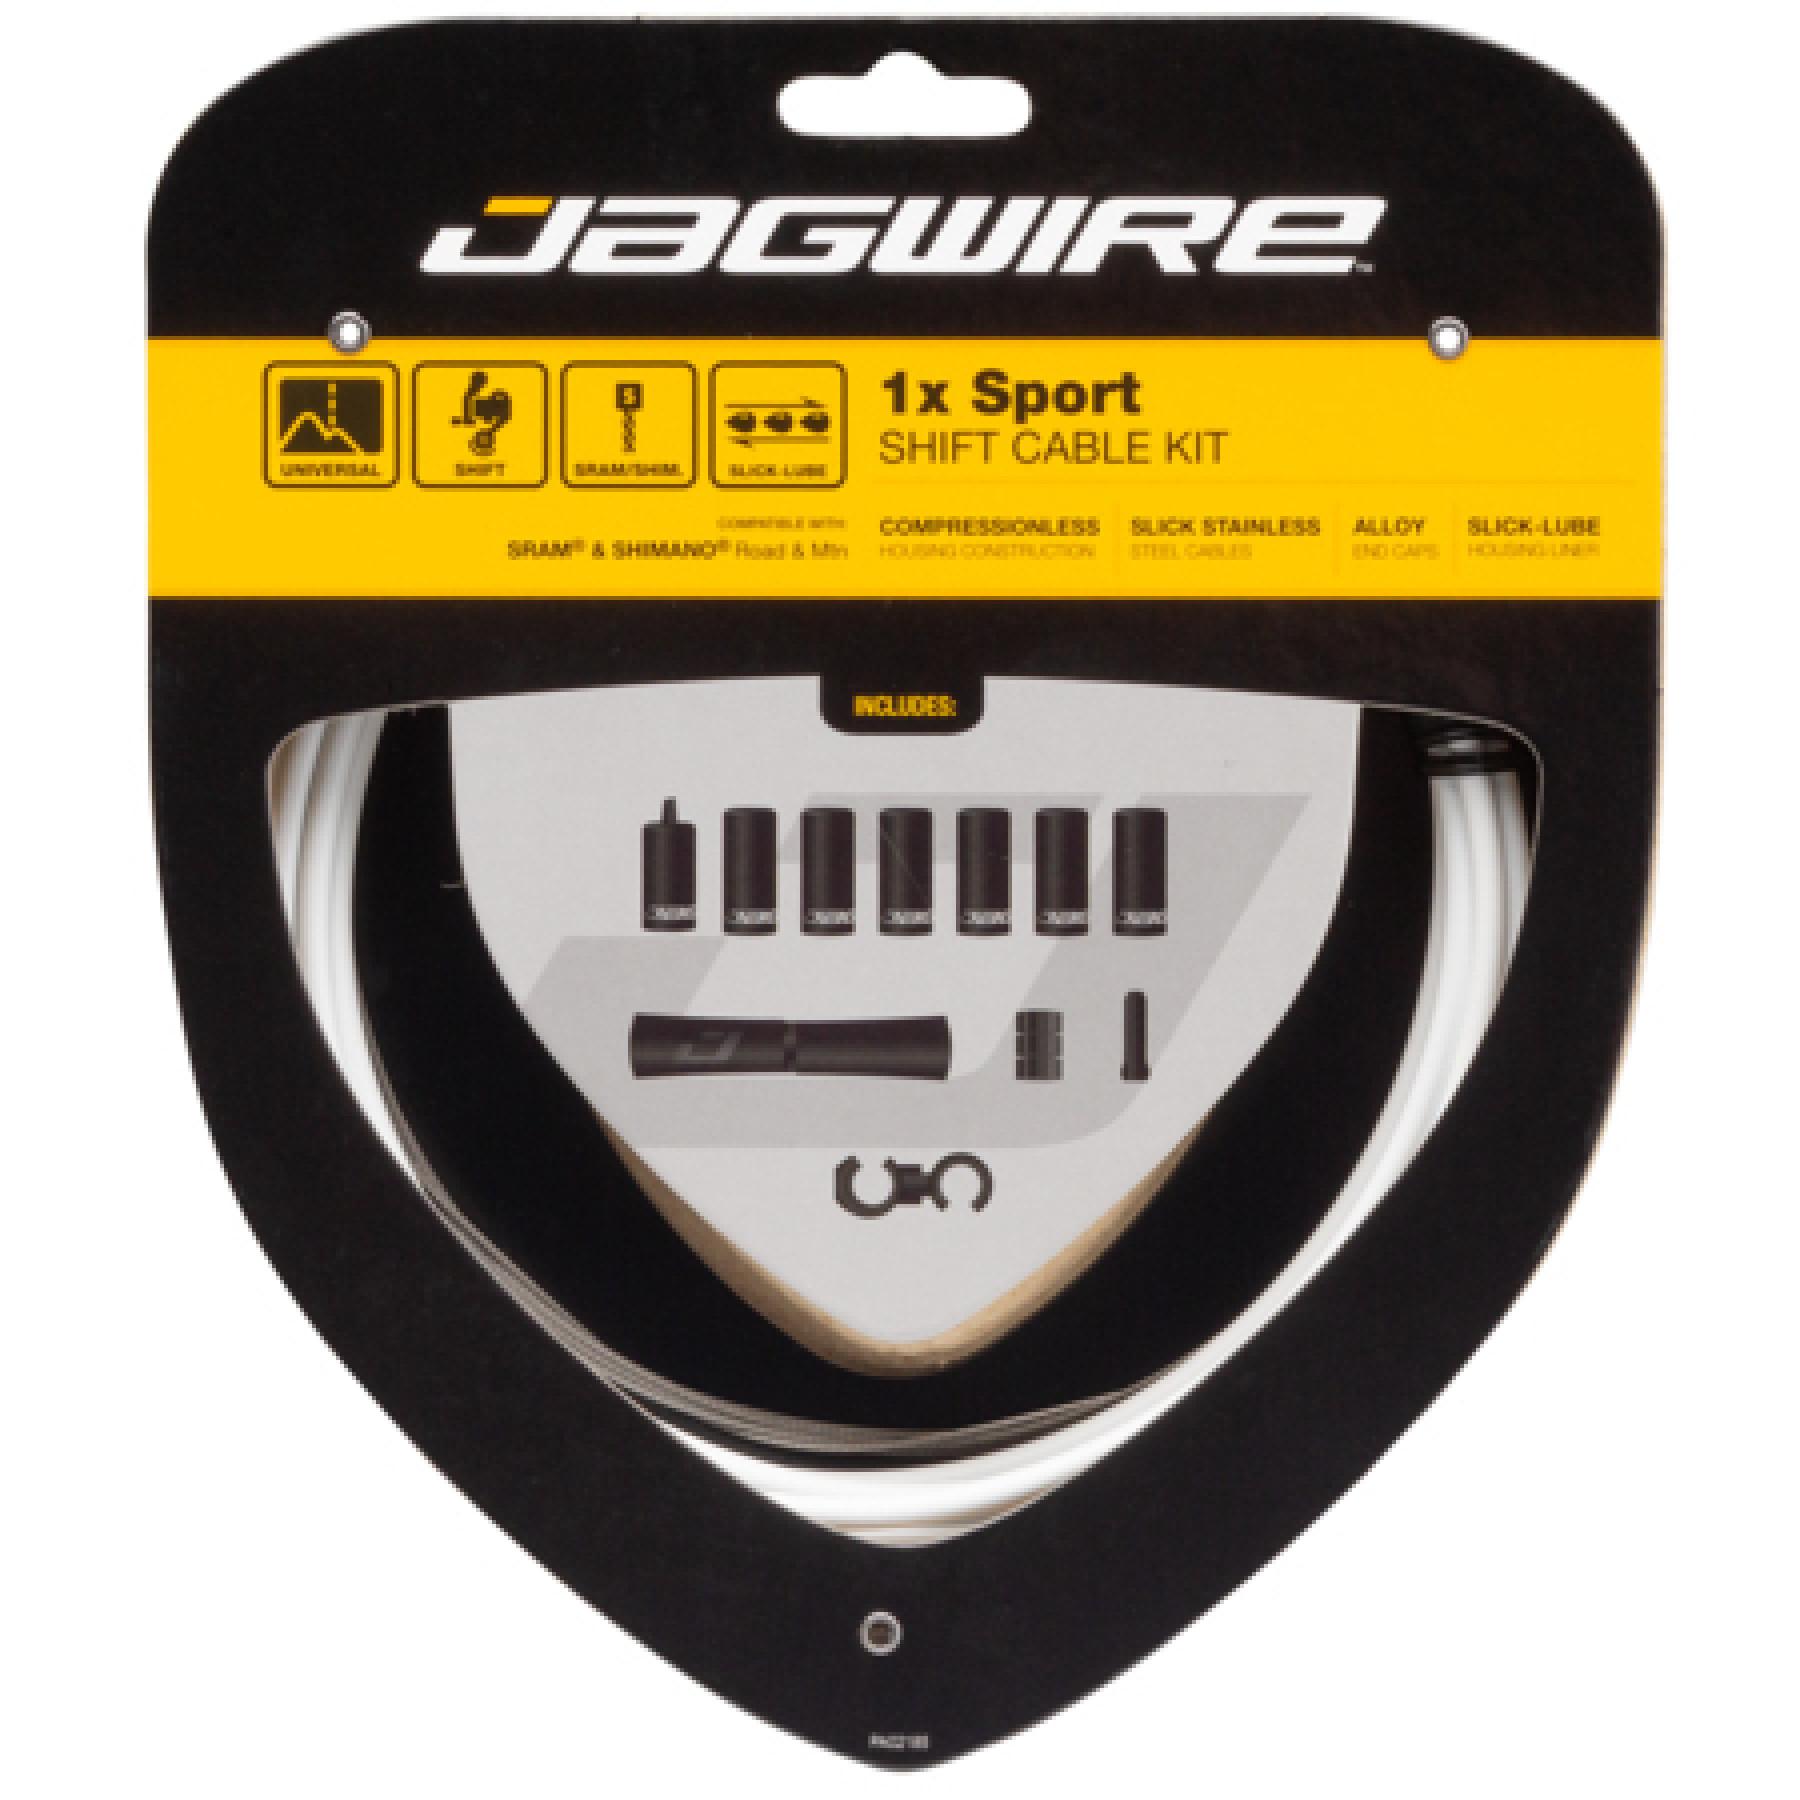 Kabel för växelförare Jagwire 1X Sport